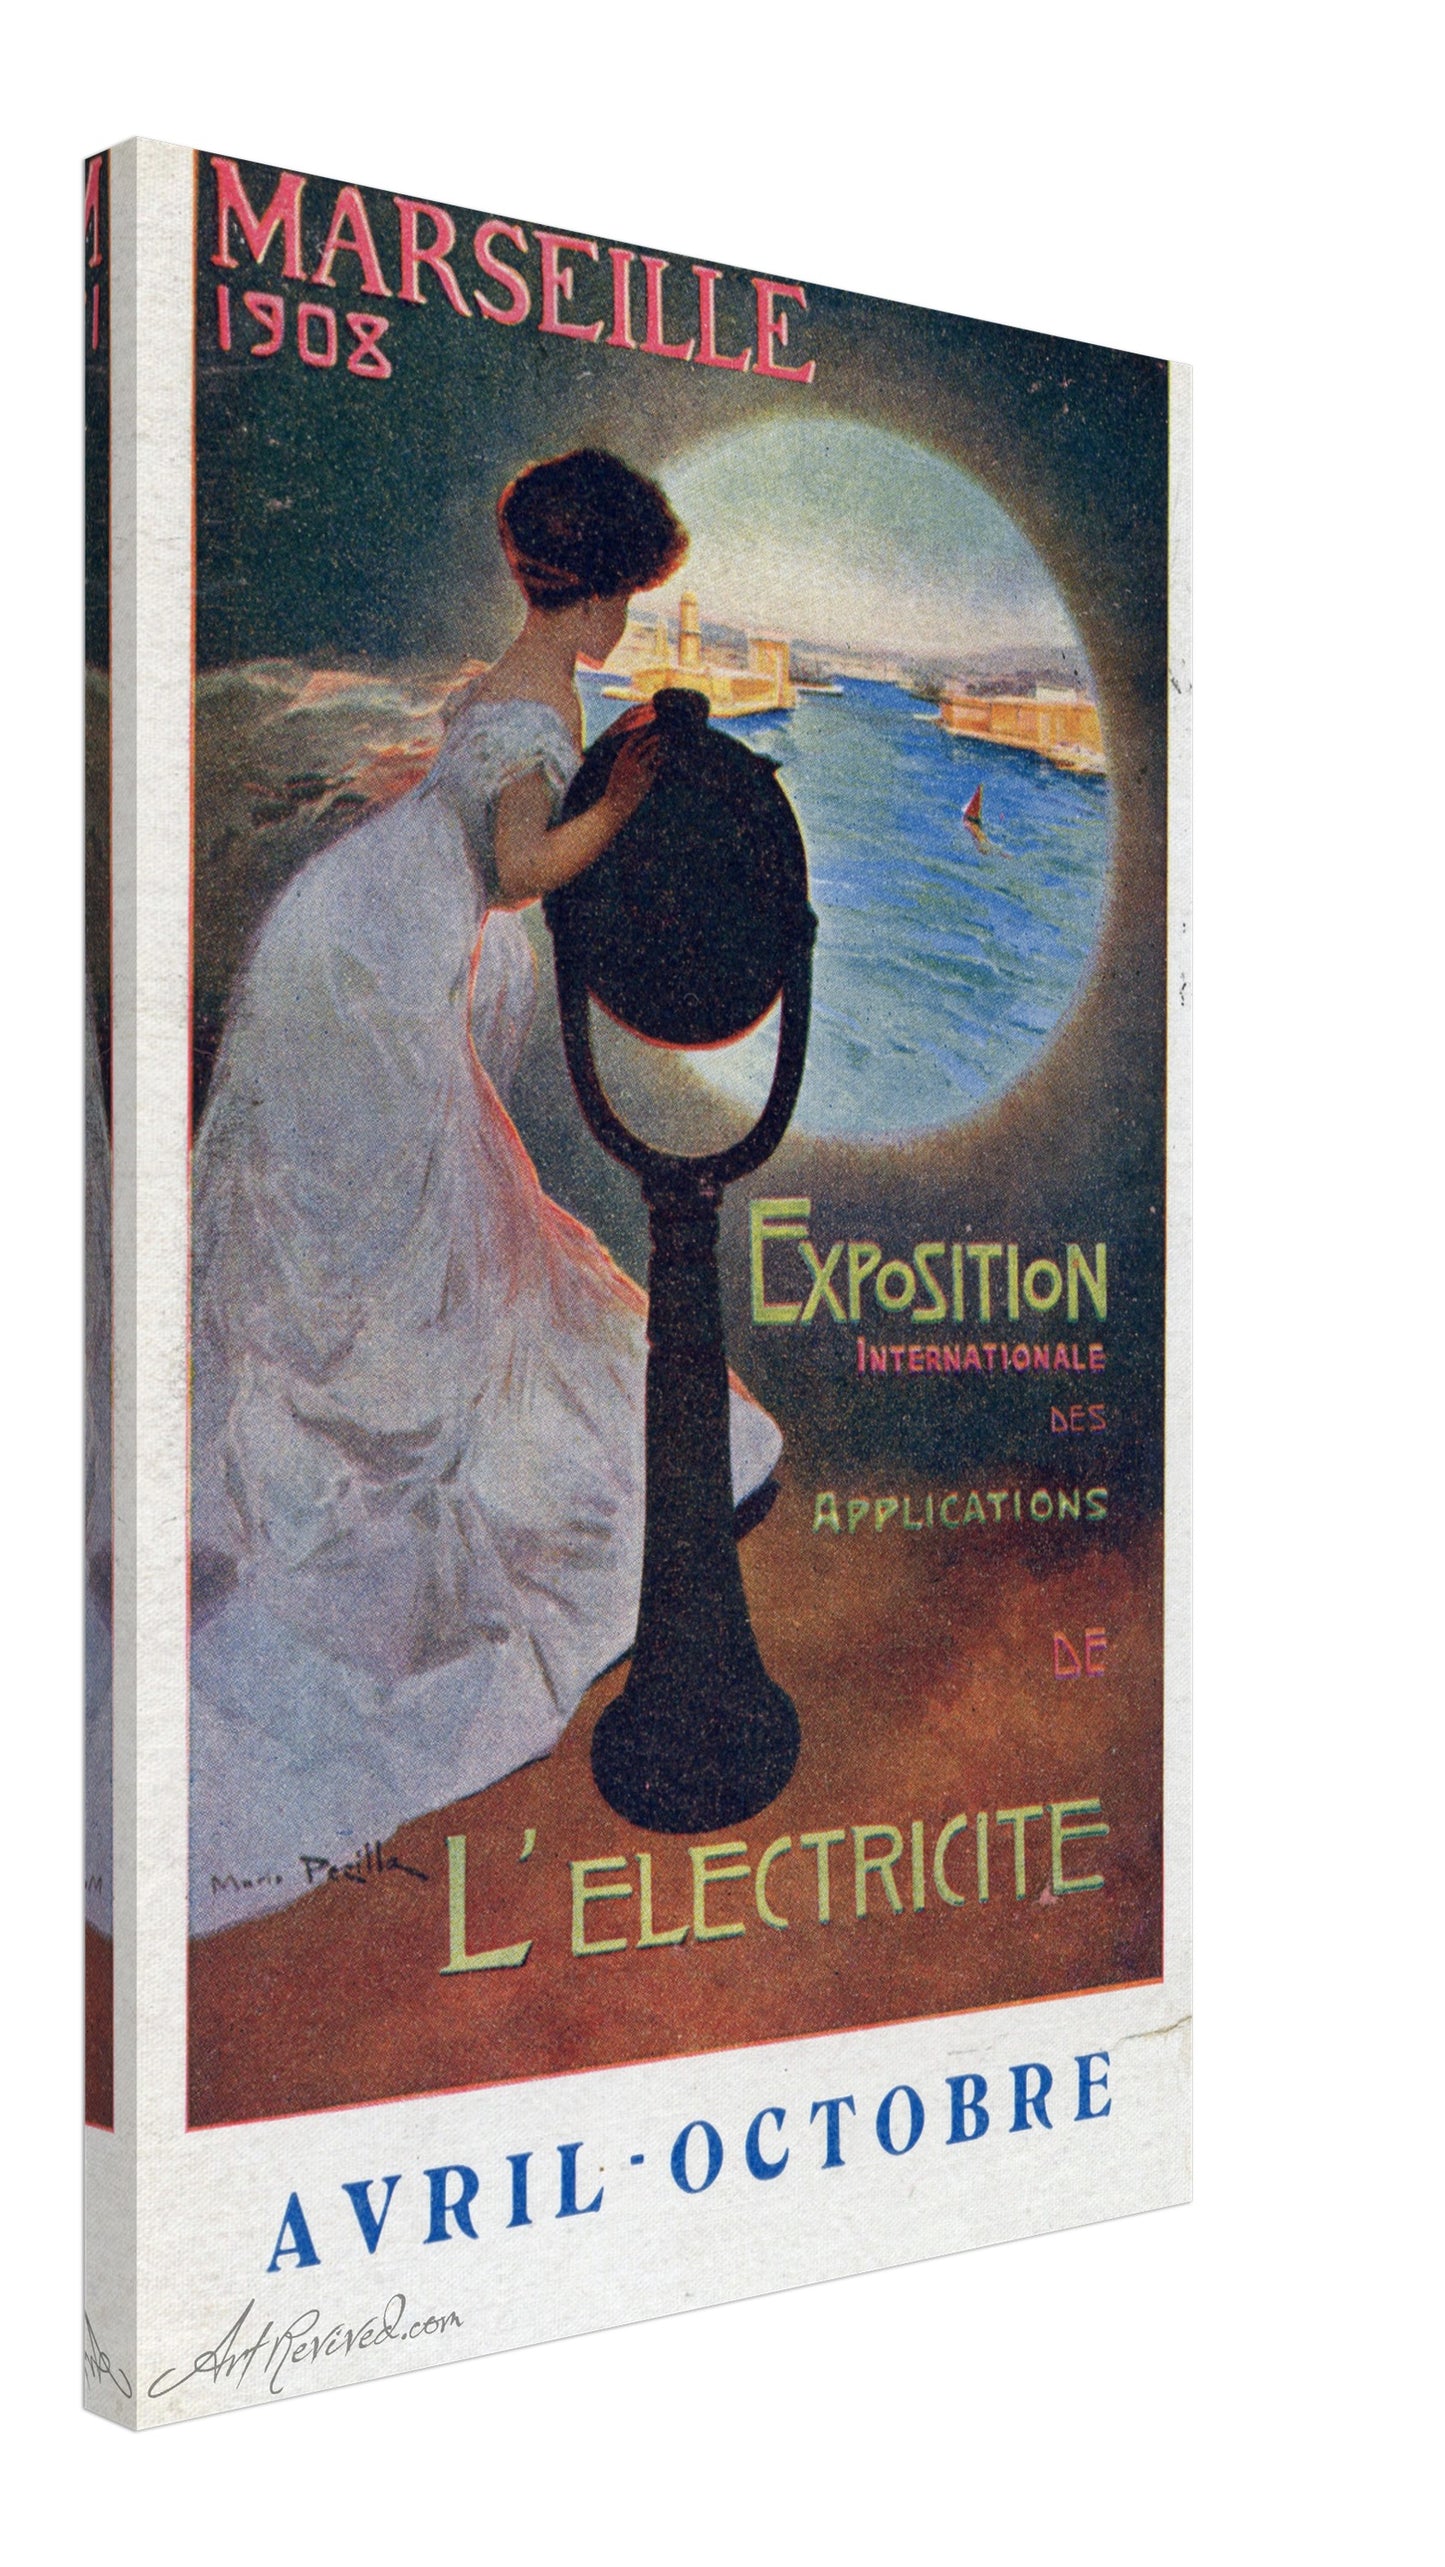 Marseille Exposition de l'electricite 1908